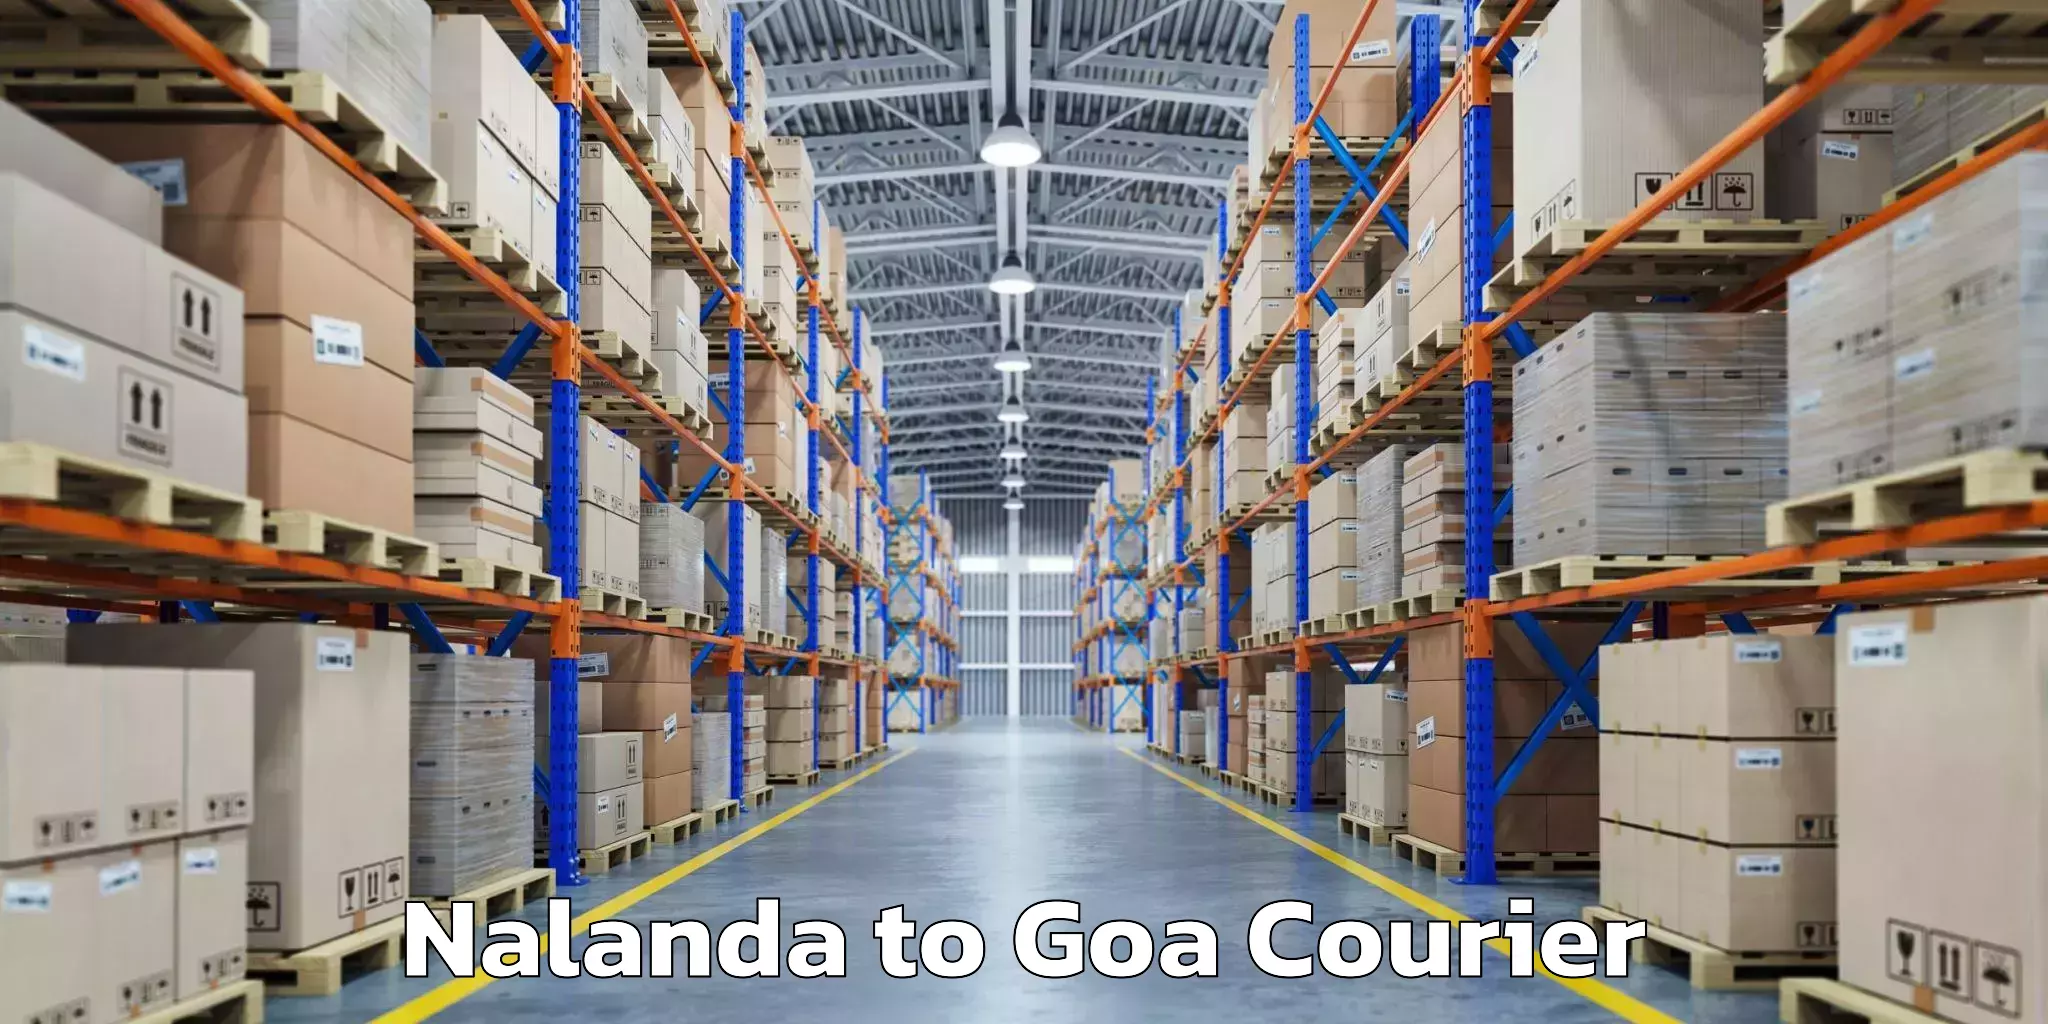 Baggage transport network Nalanda to IIT Goa